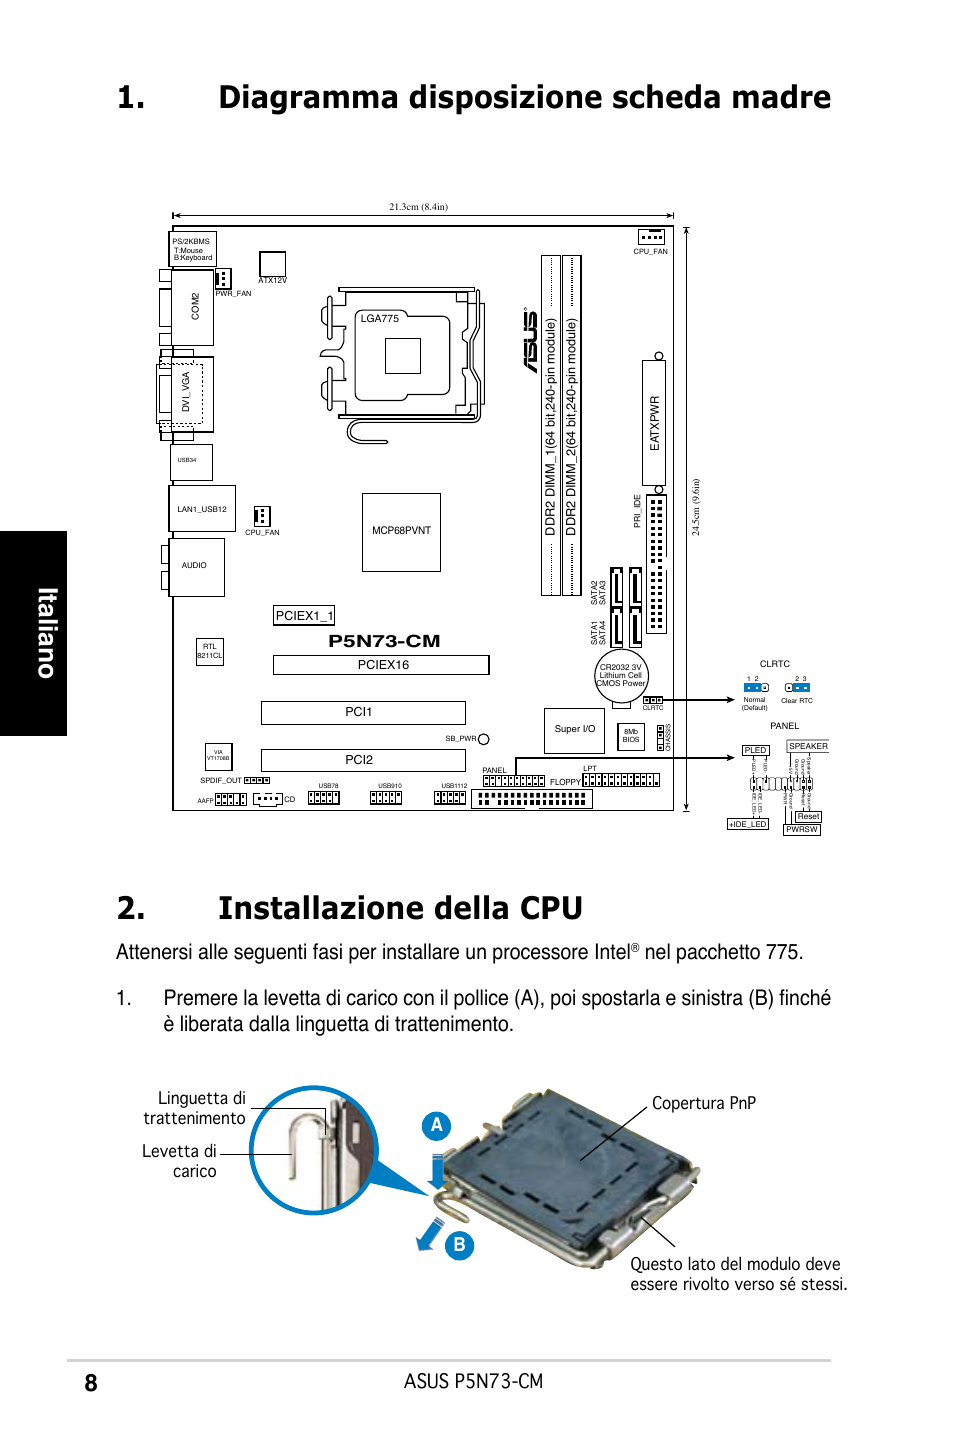 Italiano, Asus p5n73-cm, Ab b | Asus P5N73-CM User Manual | Page 8 / 38 |  Original mode